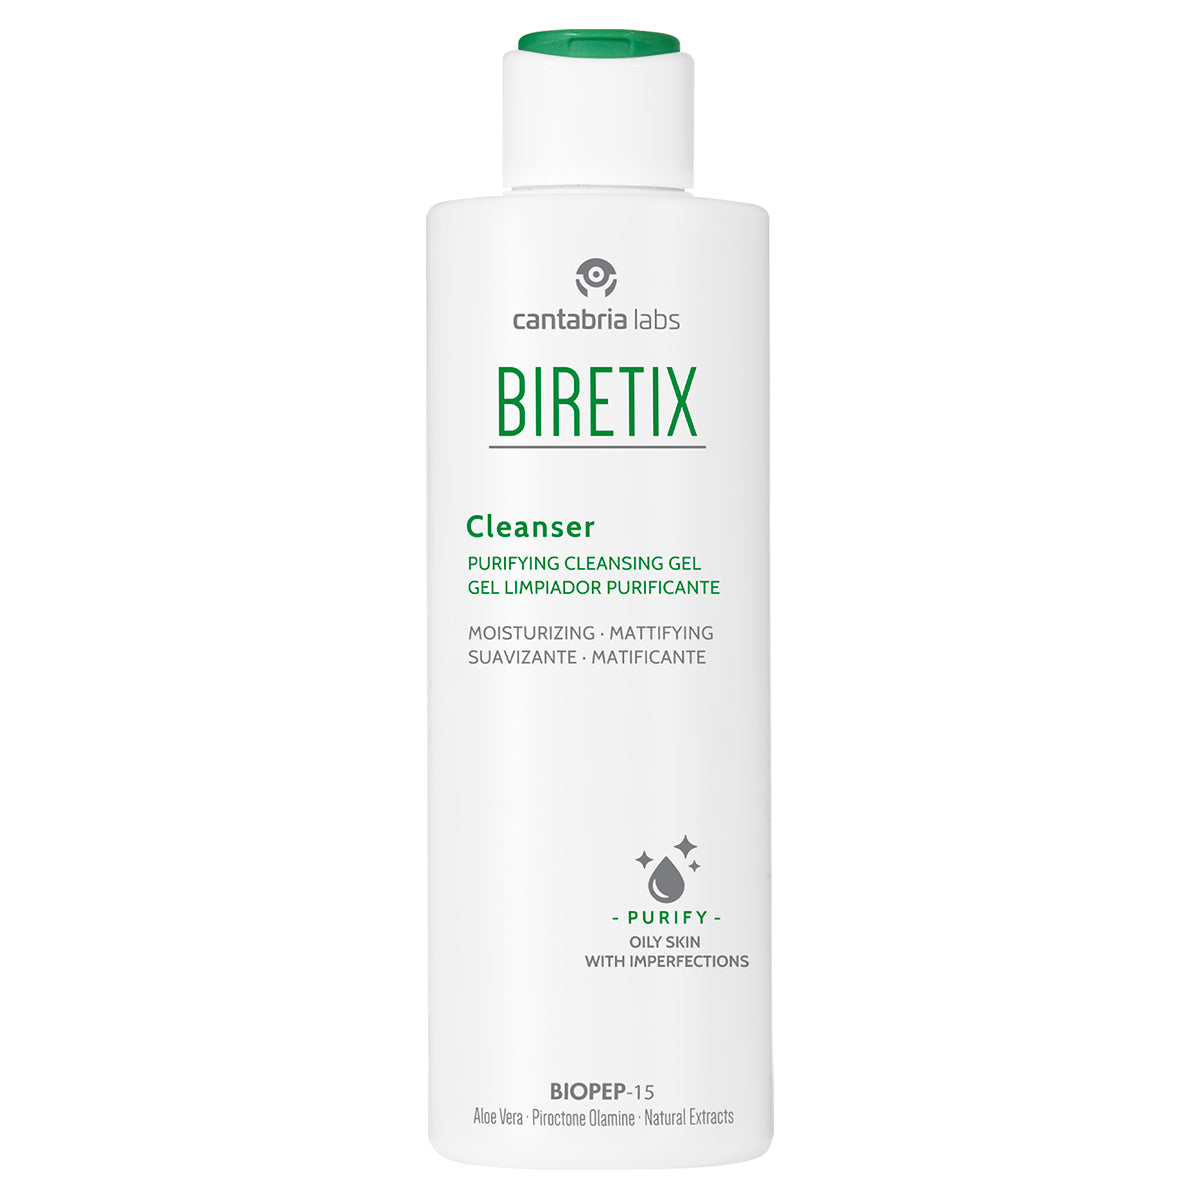 Biretix cleanser gel limpiador 200ml.